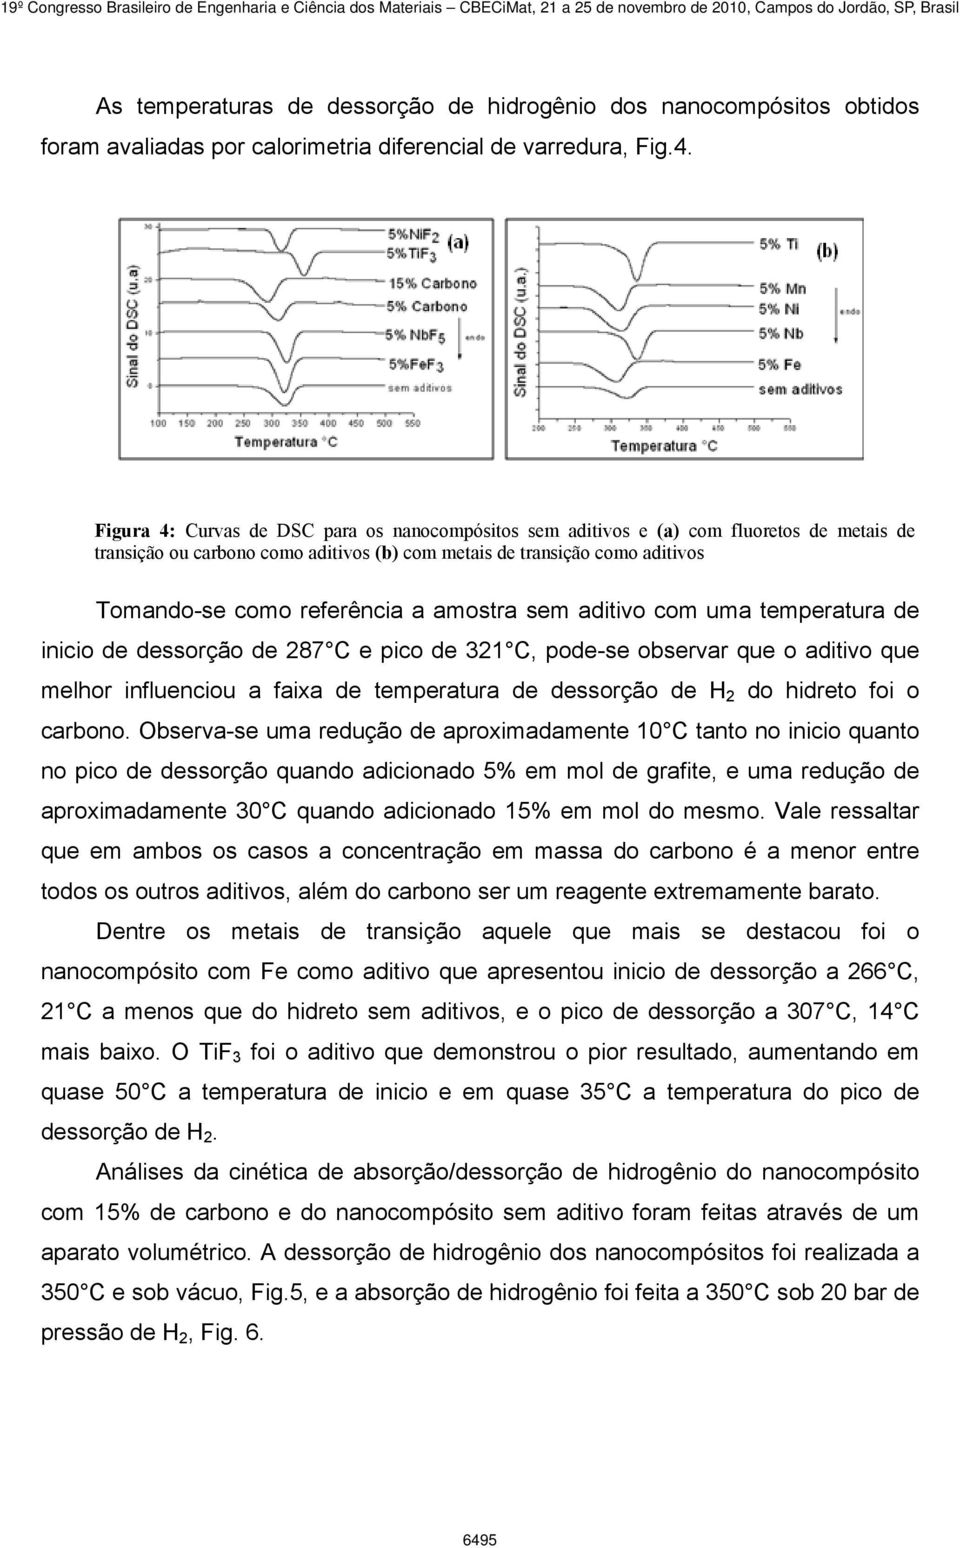 amostra sem aditivo com uma temperatura de inicio de dessorção de 287 C e pico de 321 C, pode-se observar que o aditivo que melhor influenciou a faixa de temperatura de dessorção de H 2 do hidreto